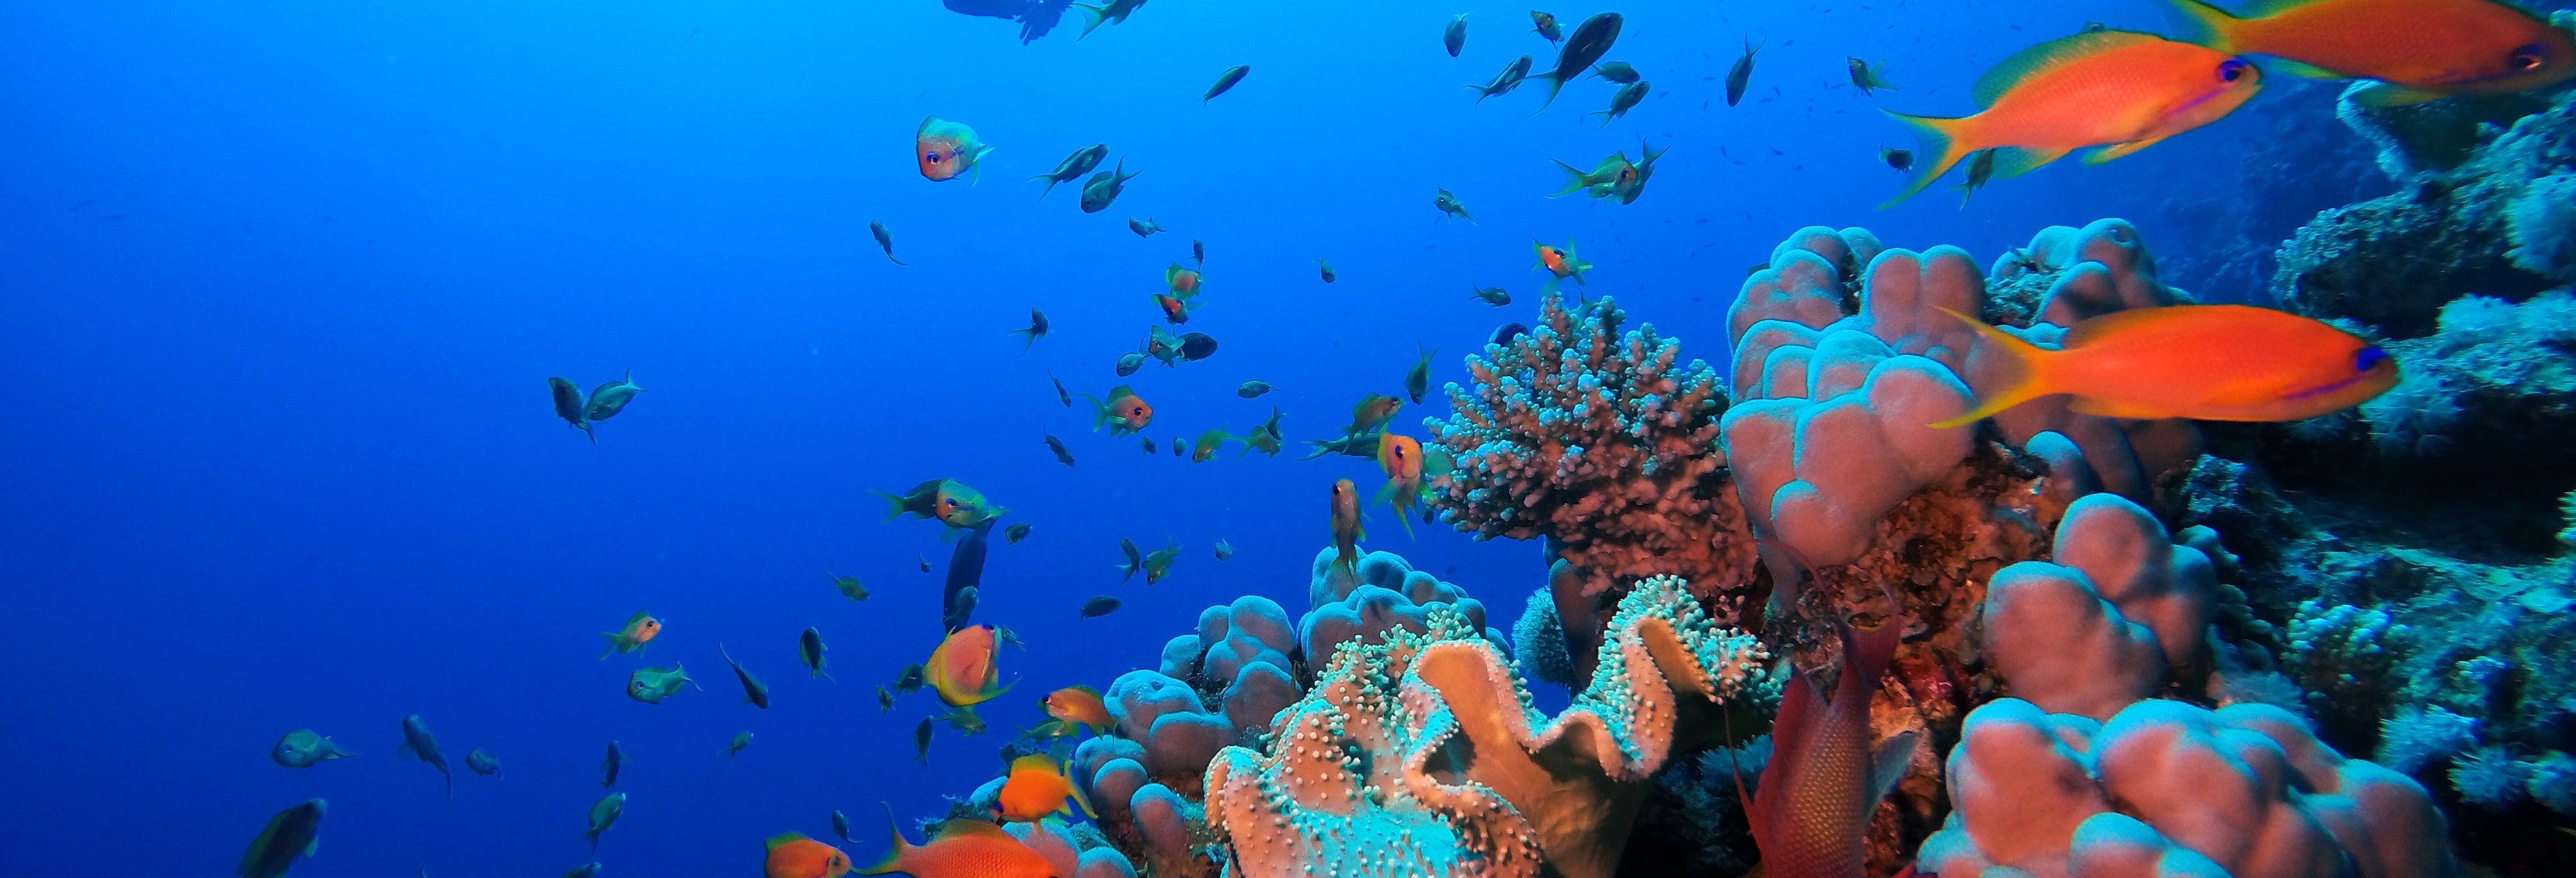 Bautismo de buceo en el Mar Rojo desde Hurghada